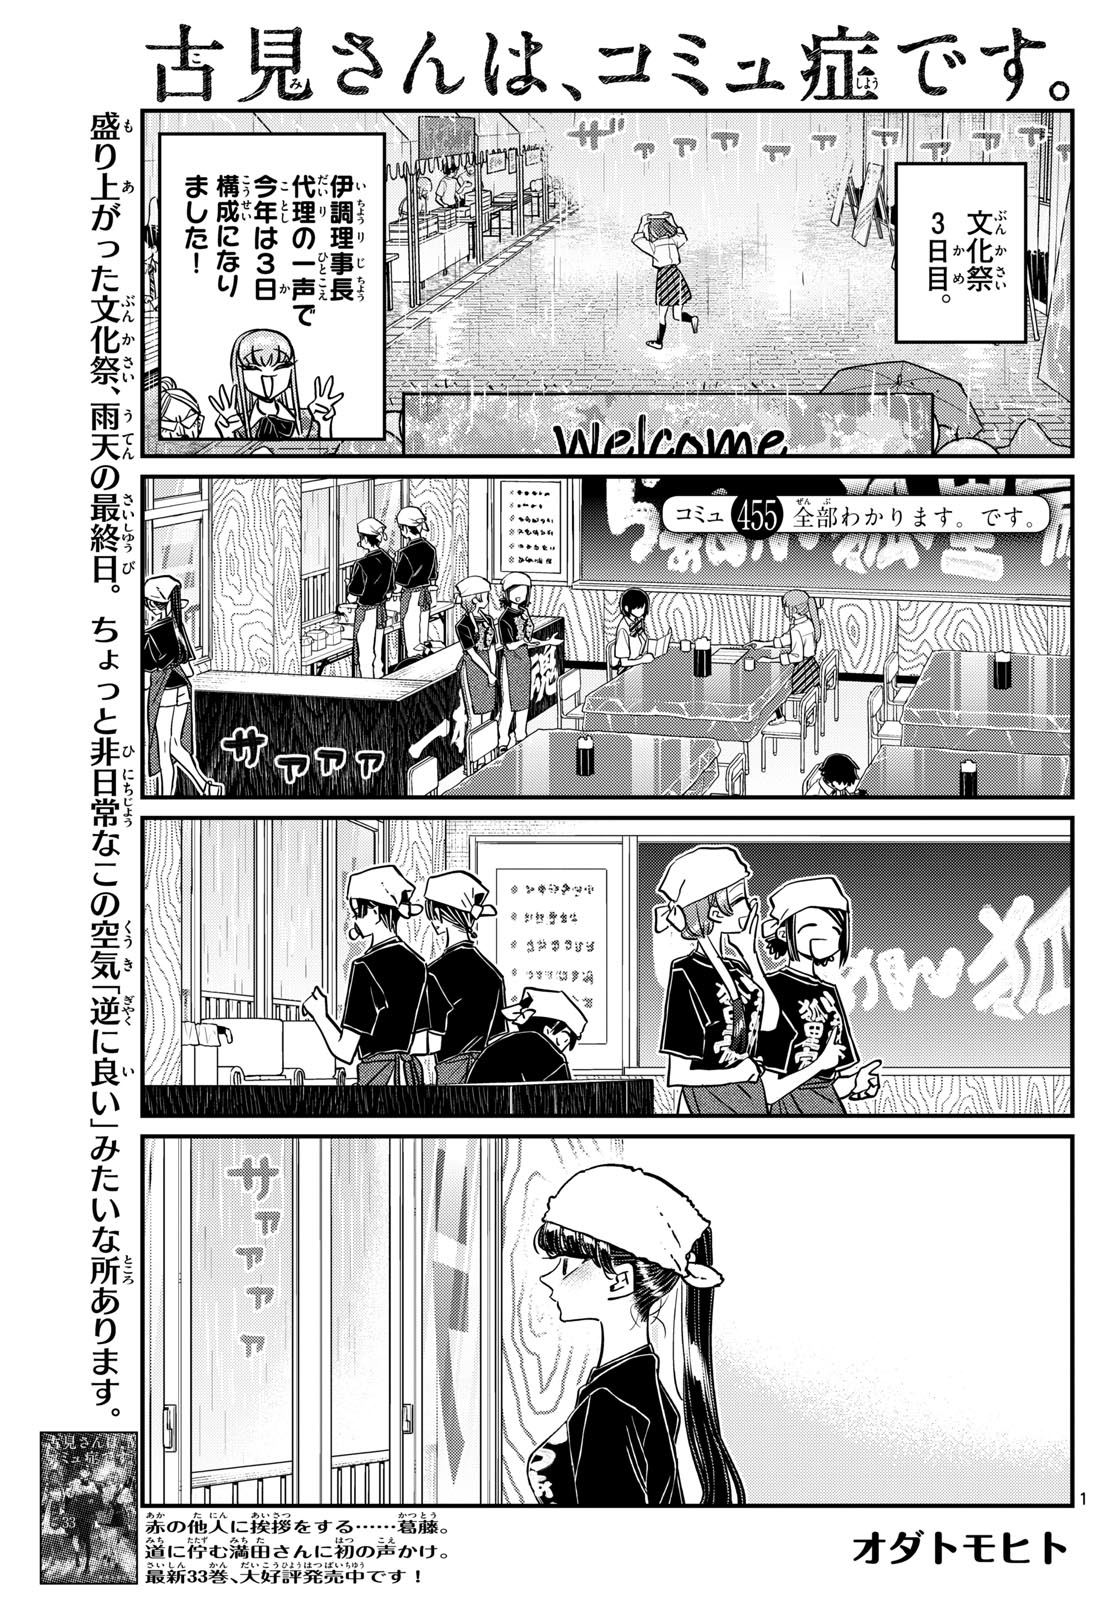 Komi-san wa Komyushou Desu - Chapter 455 - Page 1